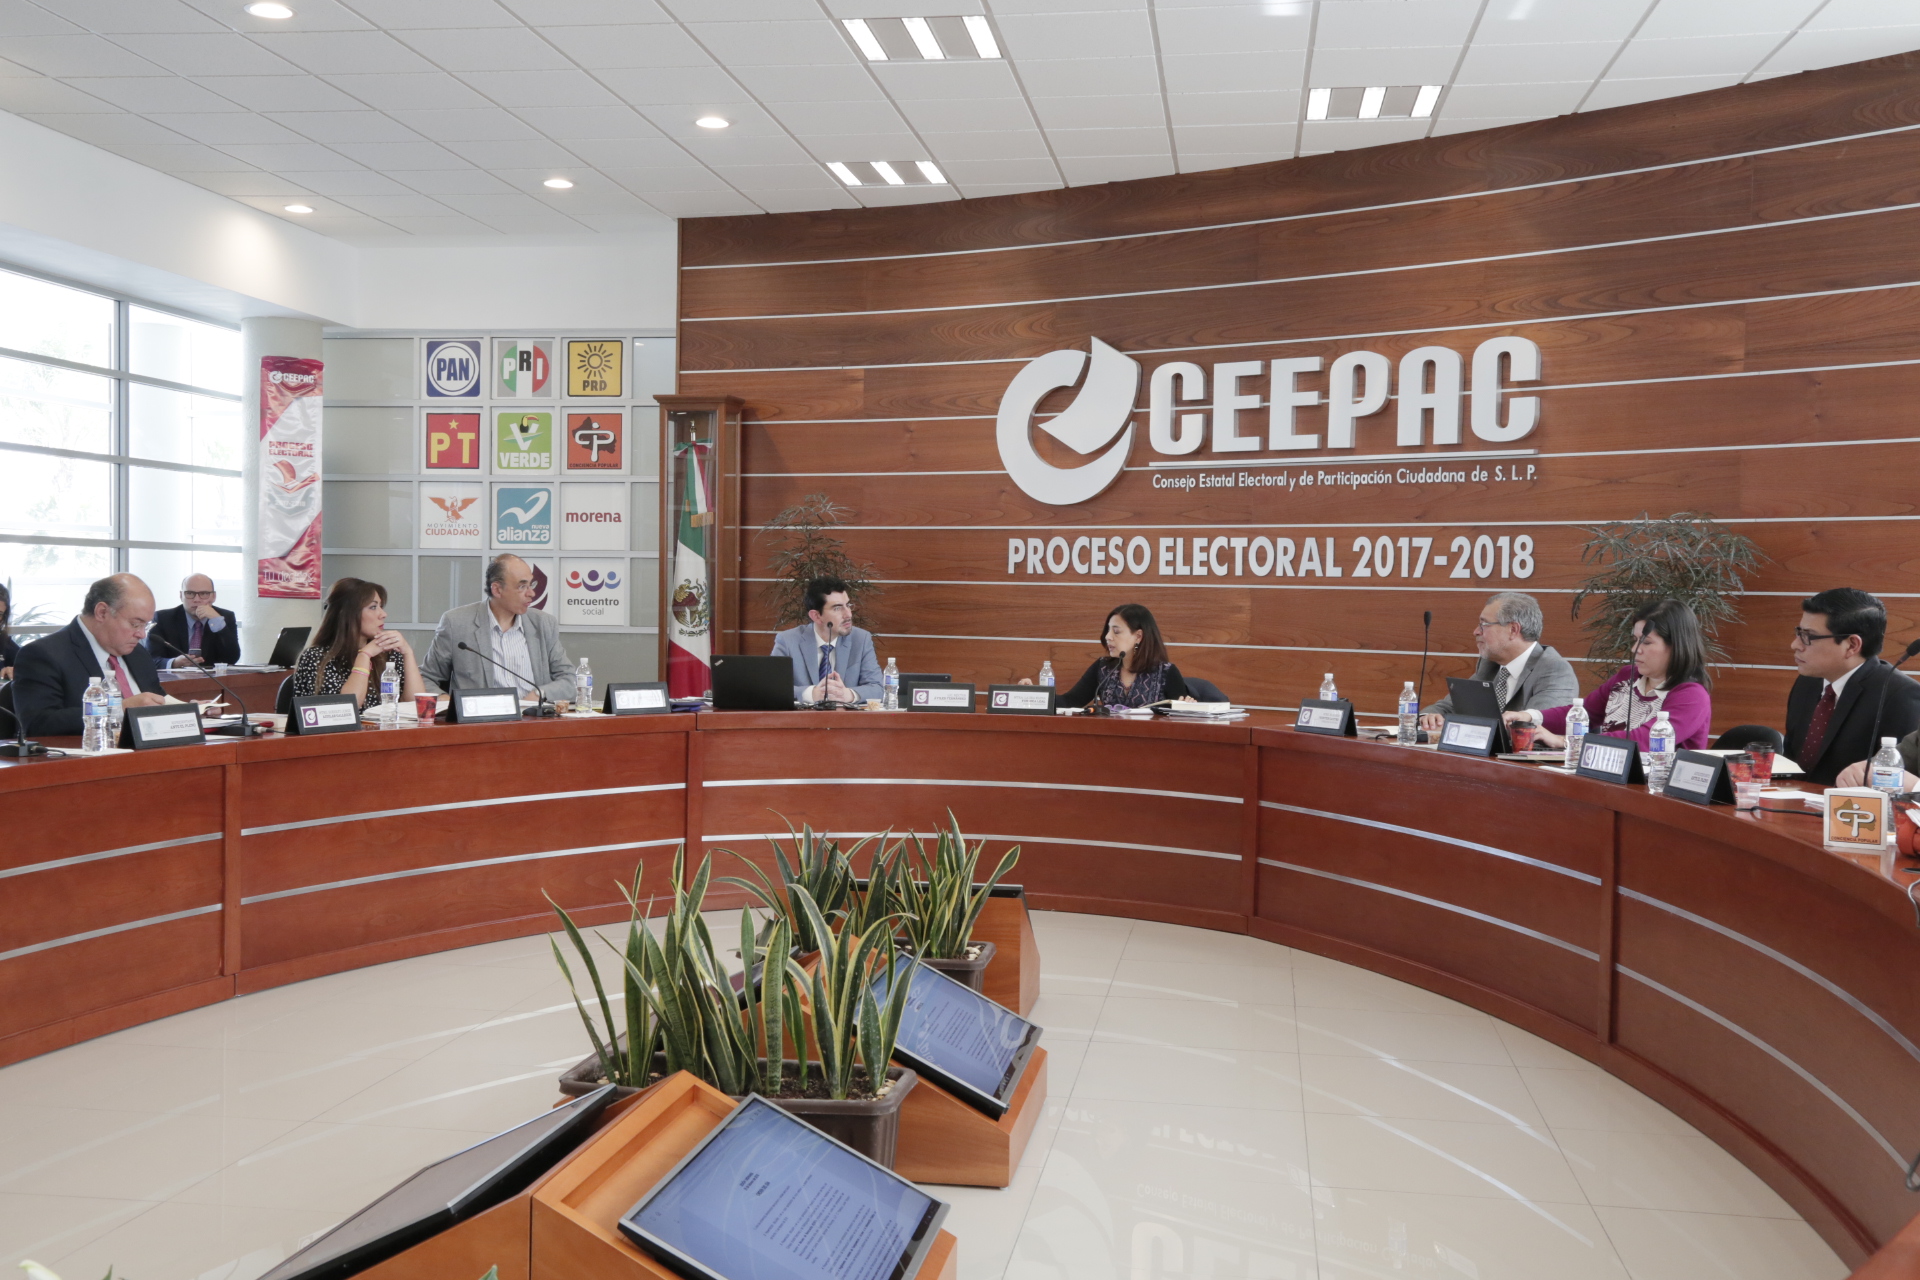  Impugnan alcaldes panistas respuesta del CEEPAC